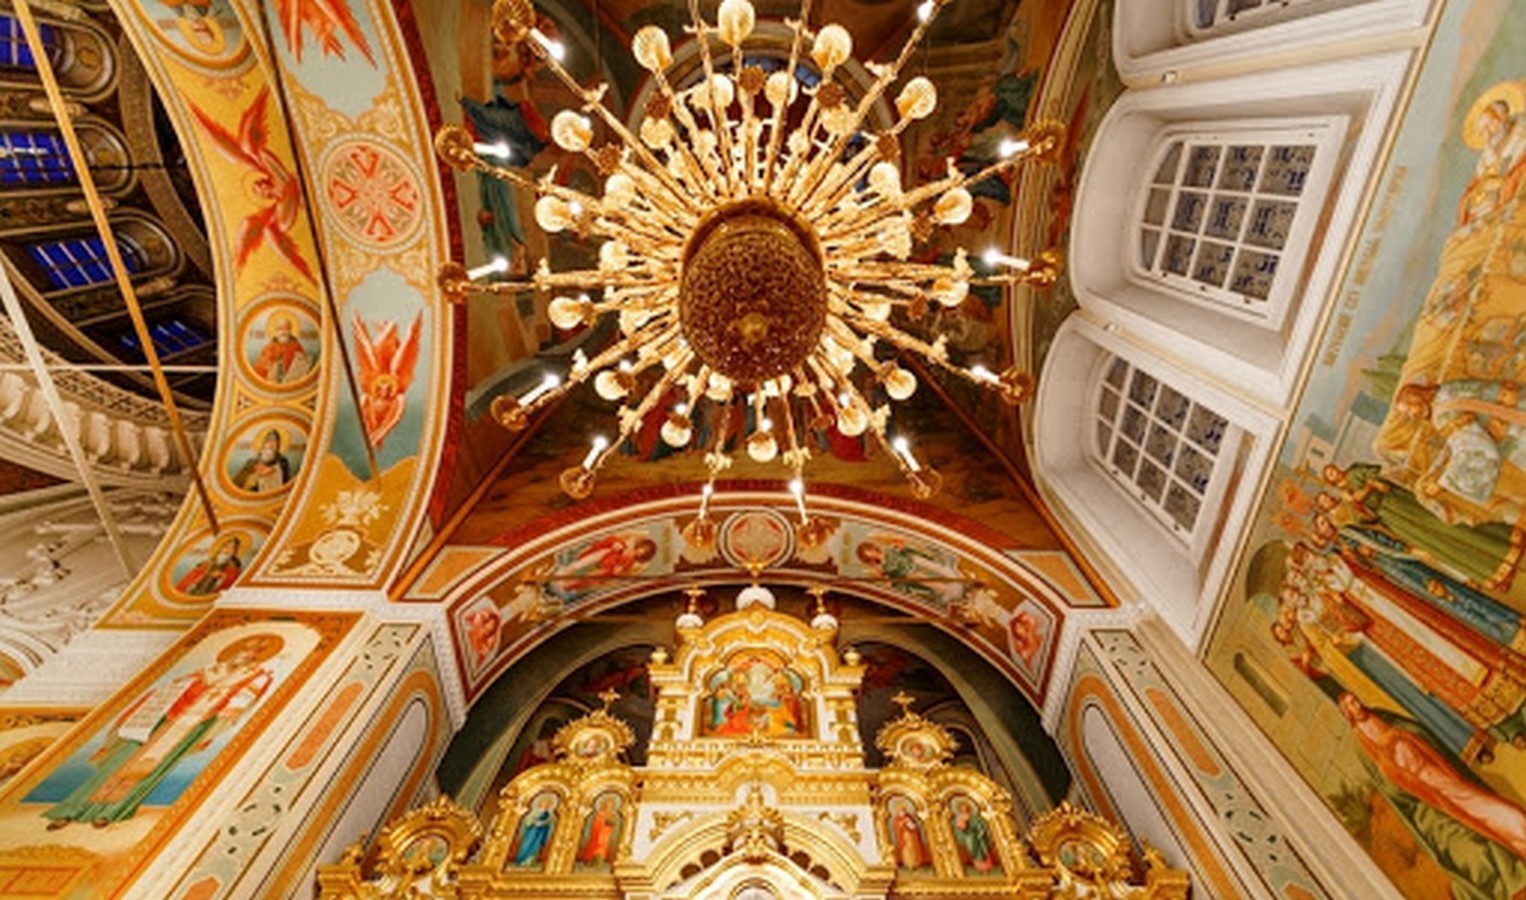 Внутреннее убранство православного храма фото